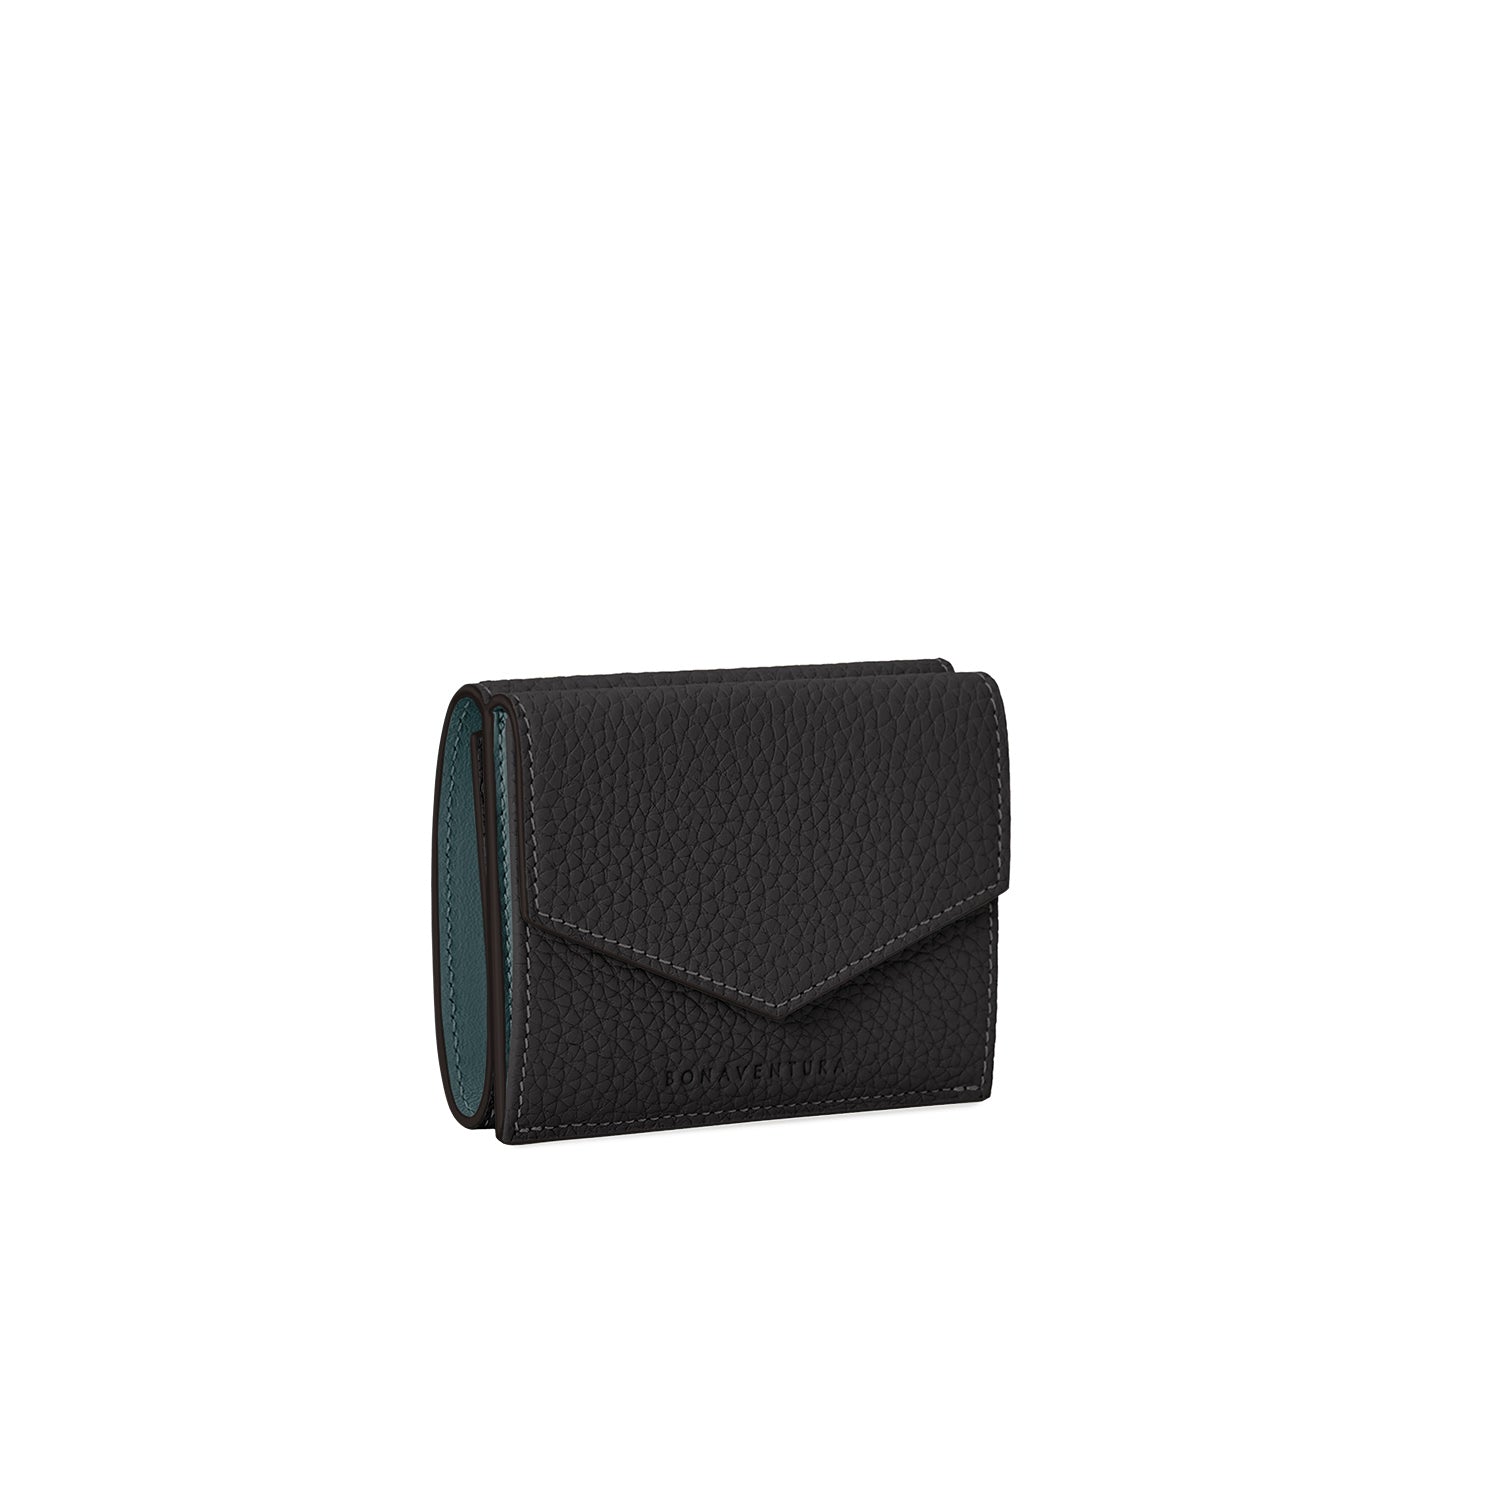 ブラック系 財布 / カードケース